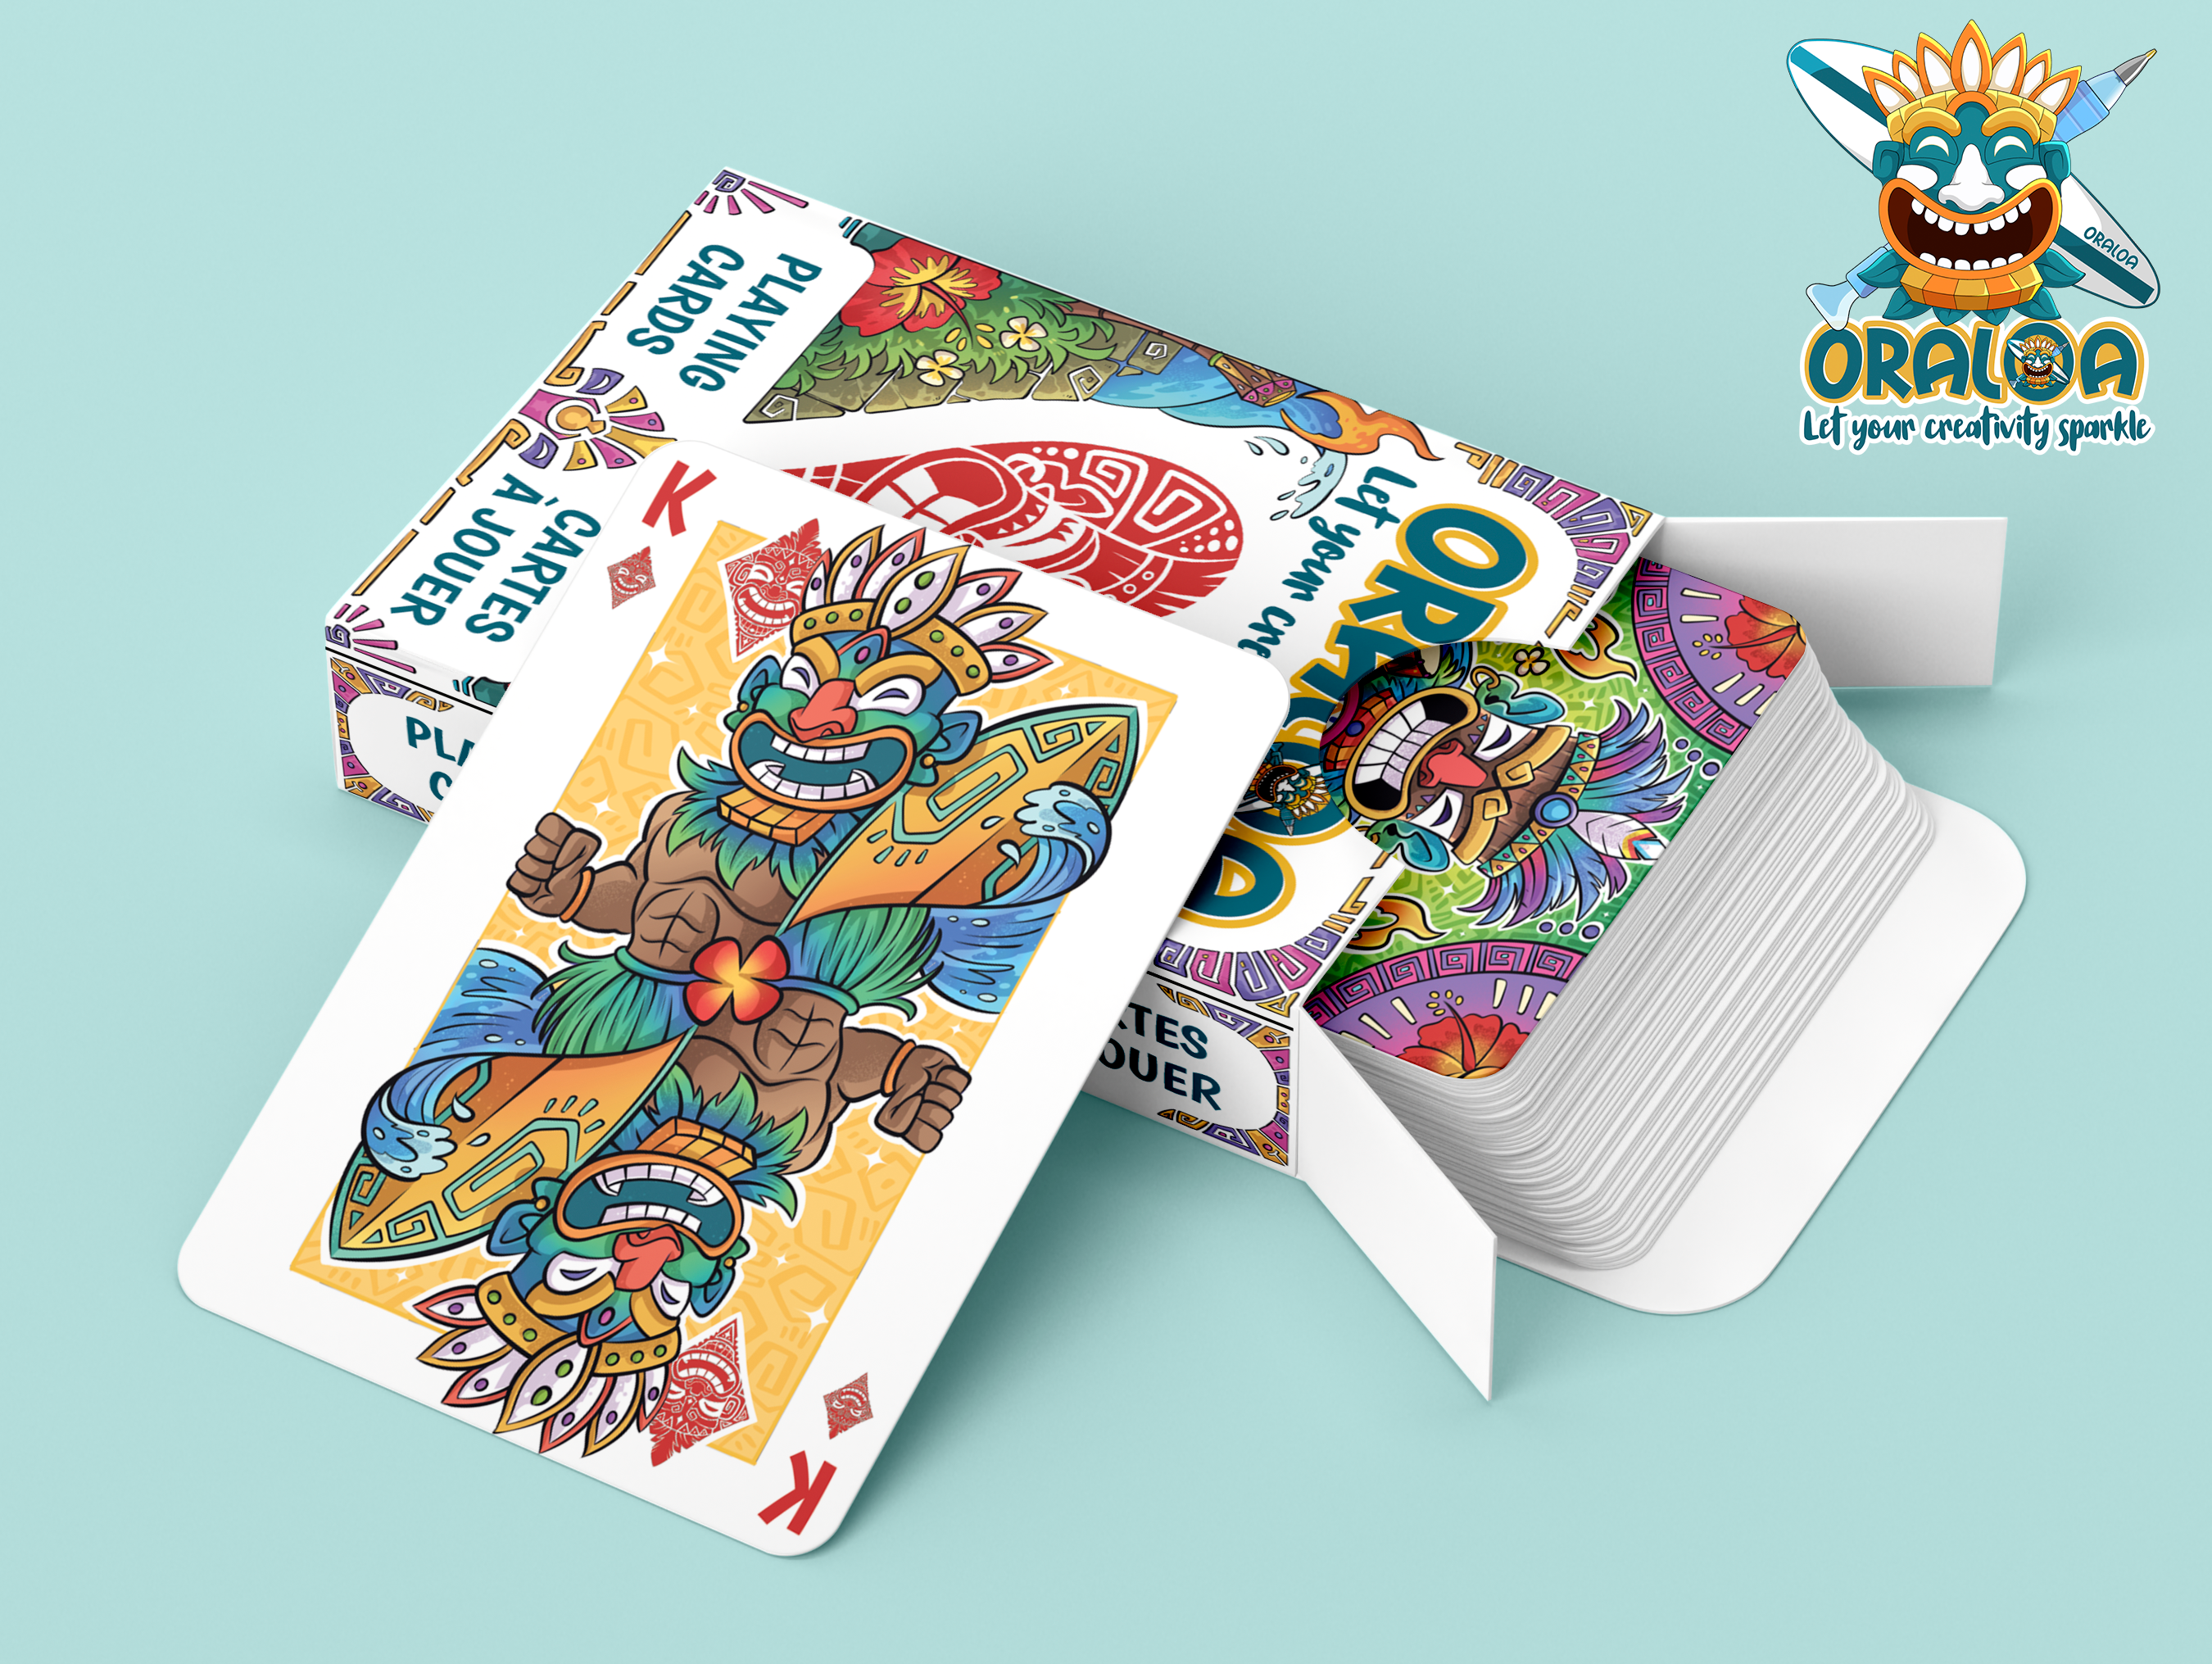 Oraloa card game